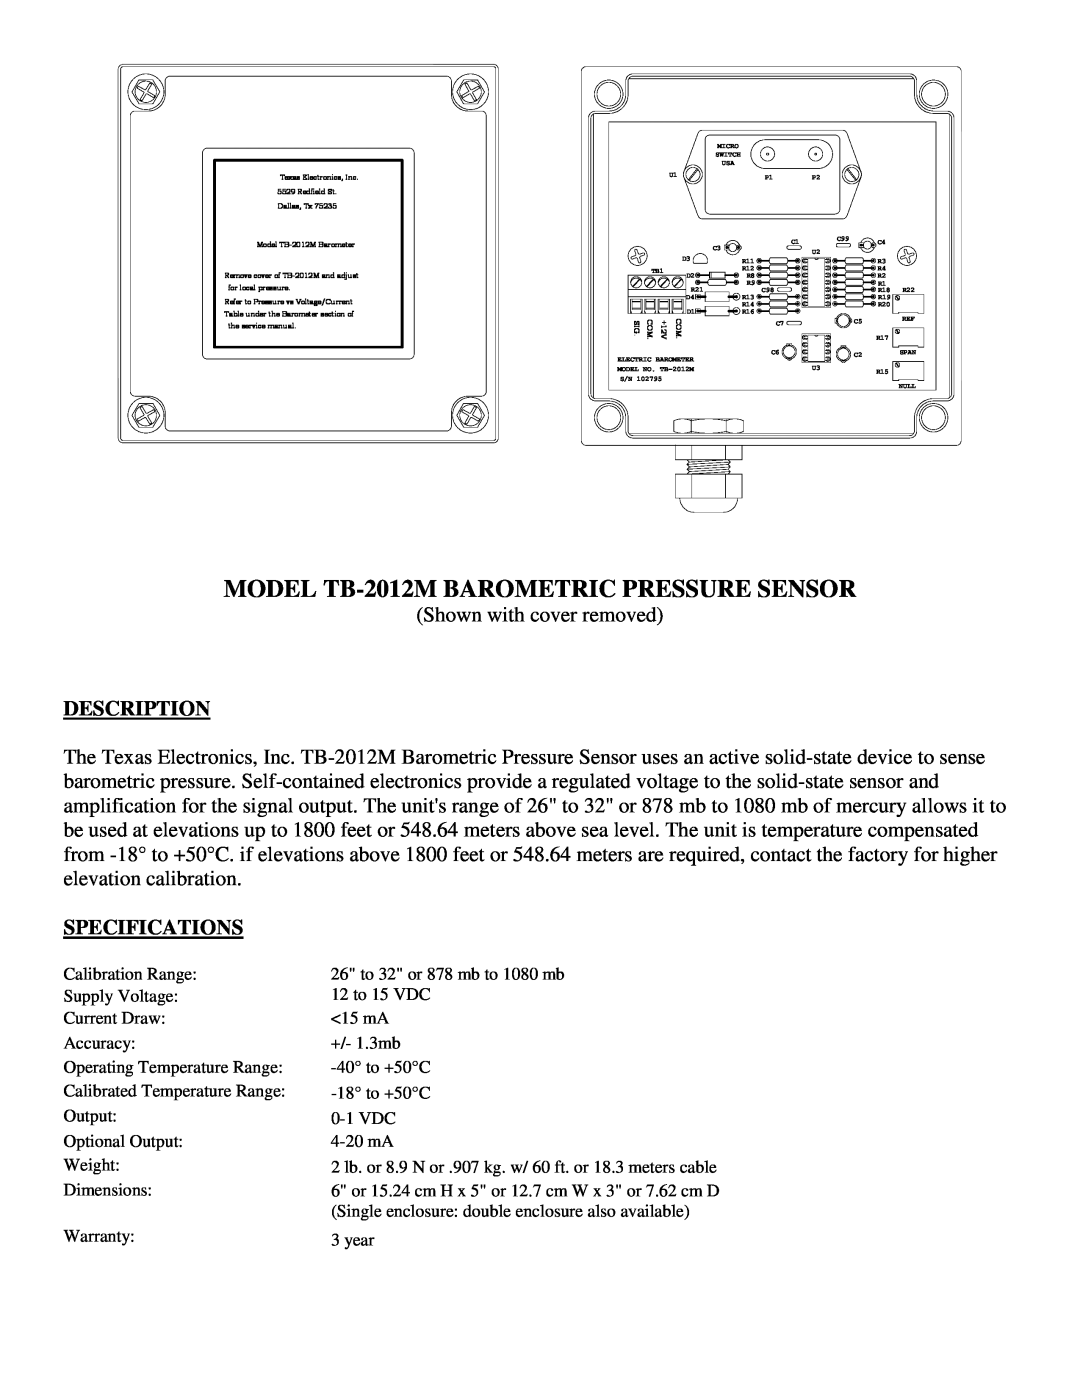 Texas Instruments SERIES 525 RAINFALL SENSORS MODEL TB-2012MBAROMETRIC PRESSURE SENSOR, Description, Specifications 